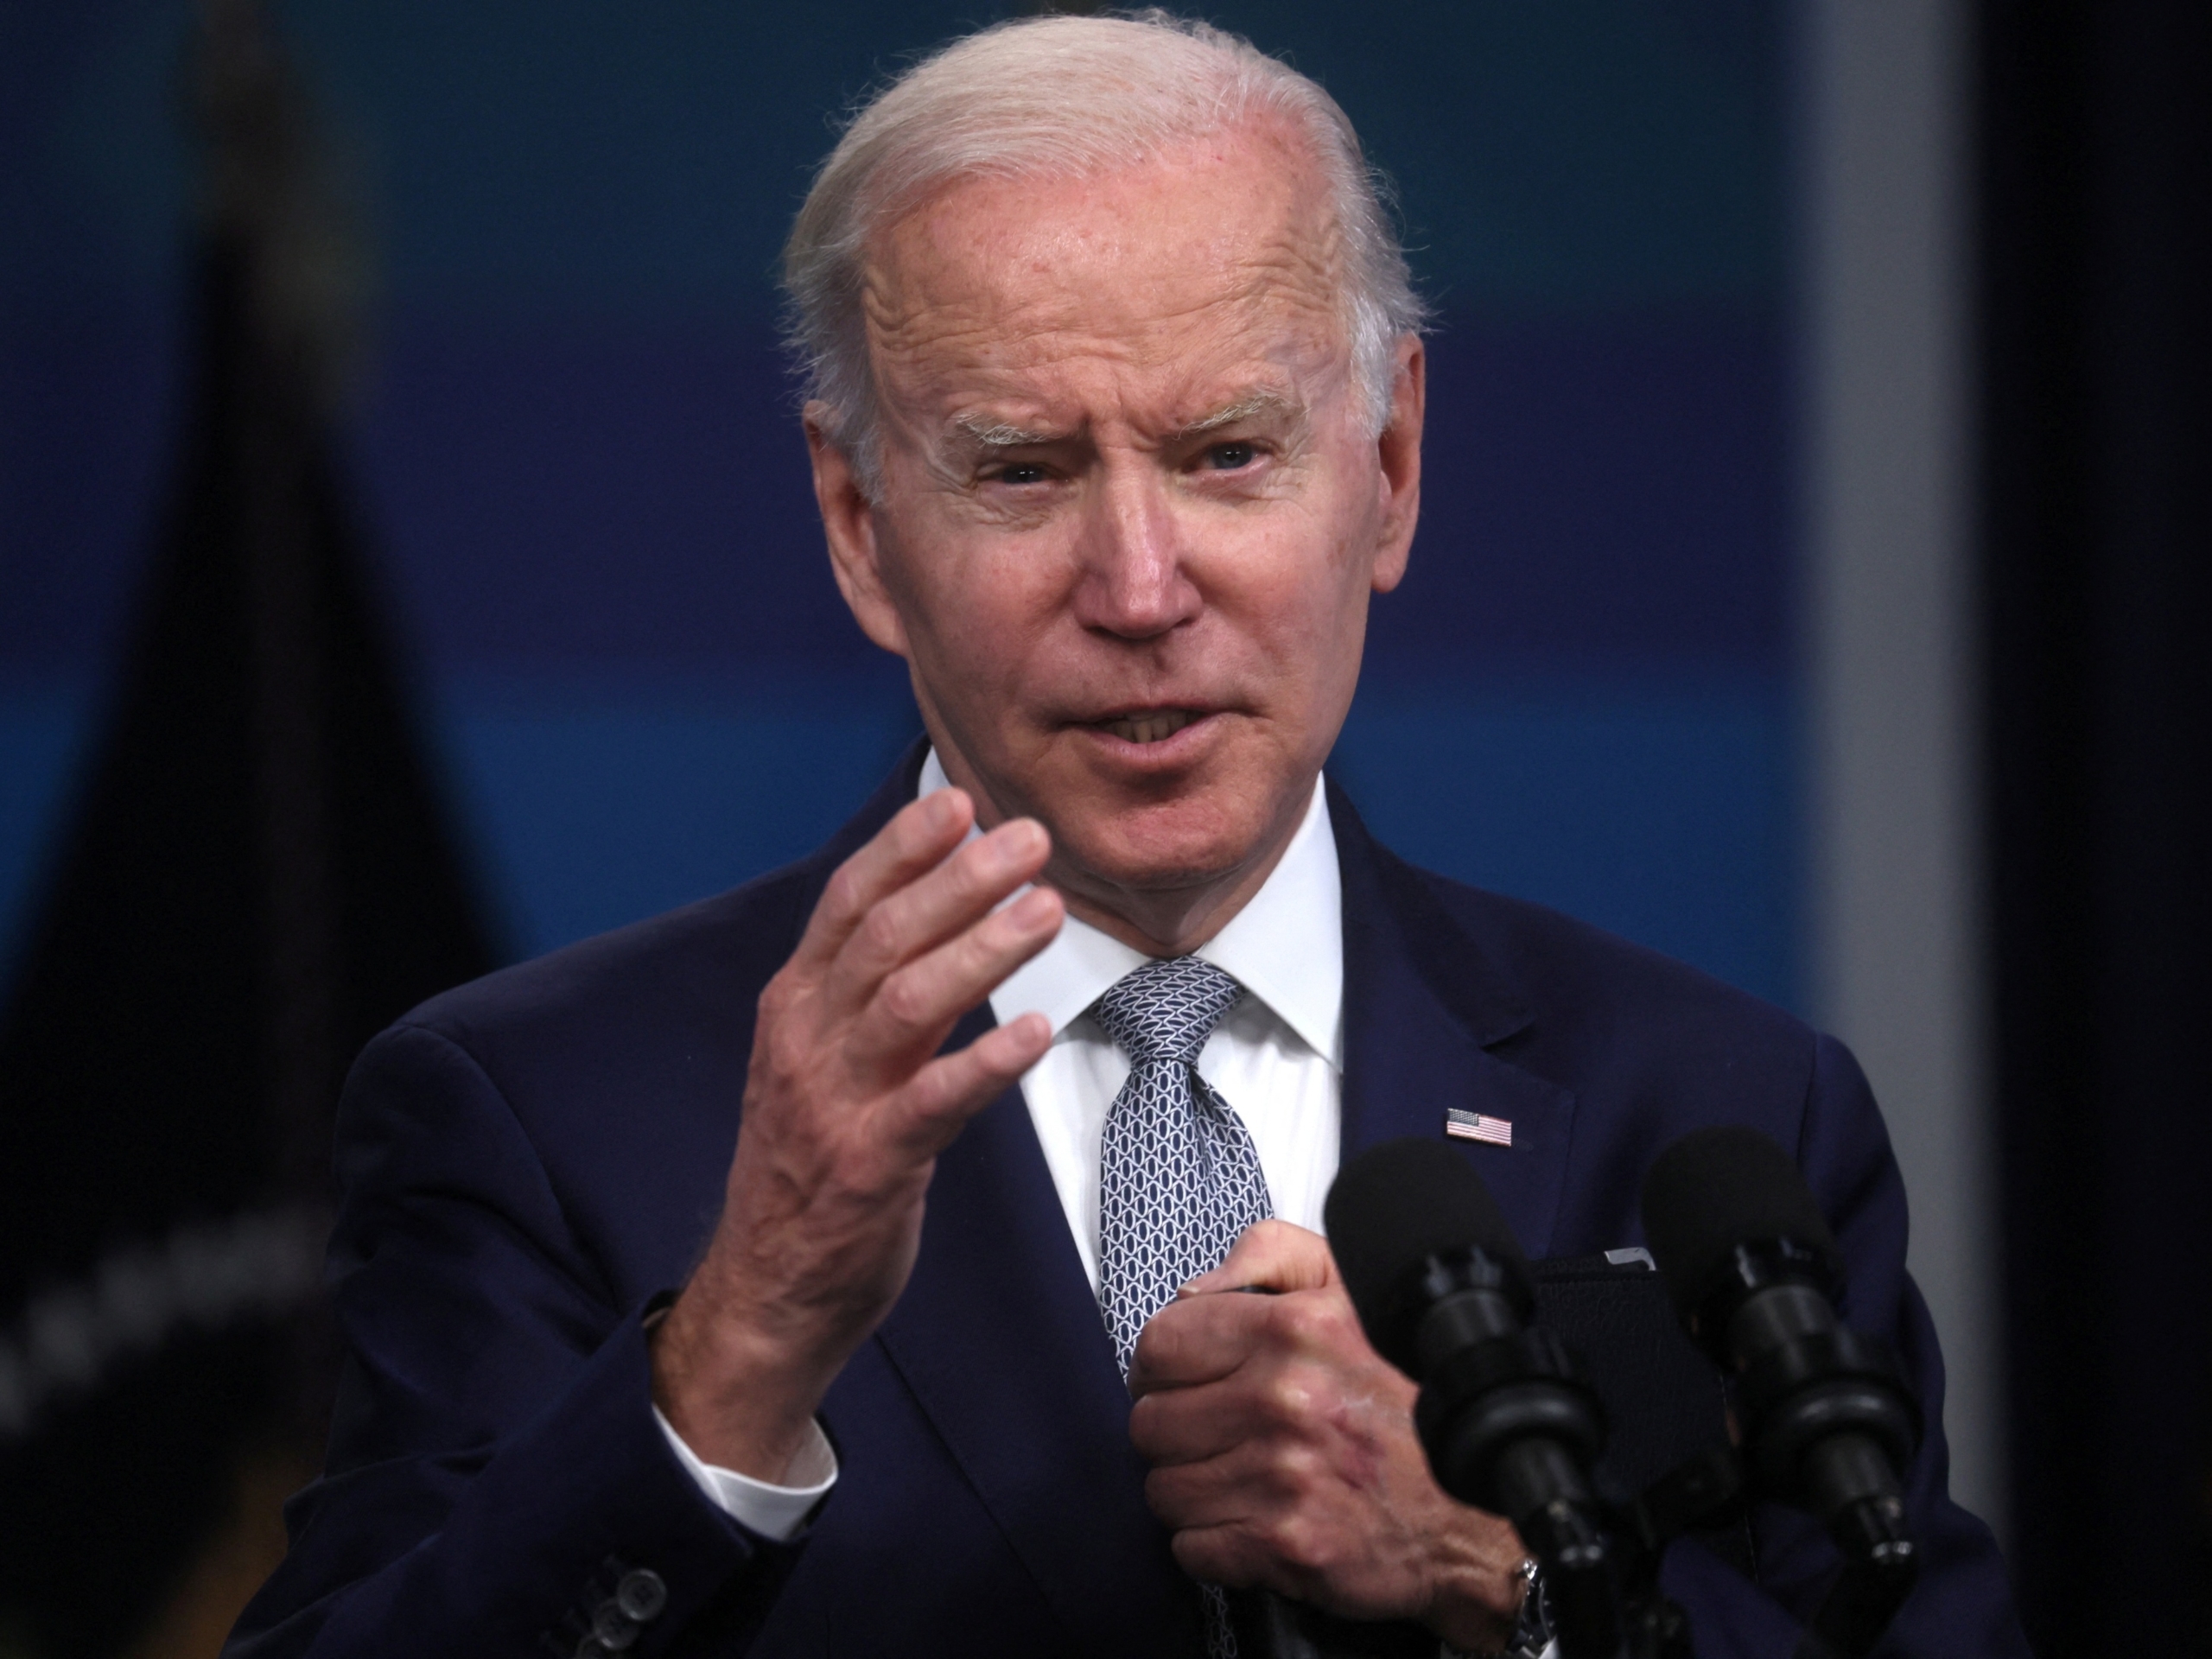 Joe Biden passa bem e apresenta sintomas leves ao testar positivo para Covid-19